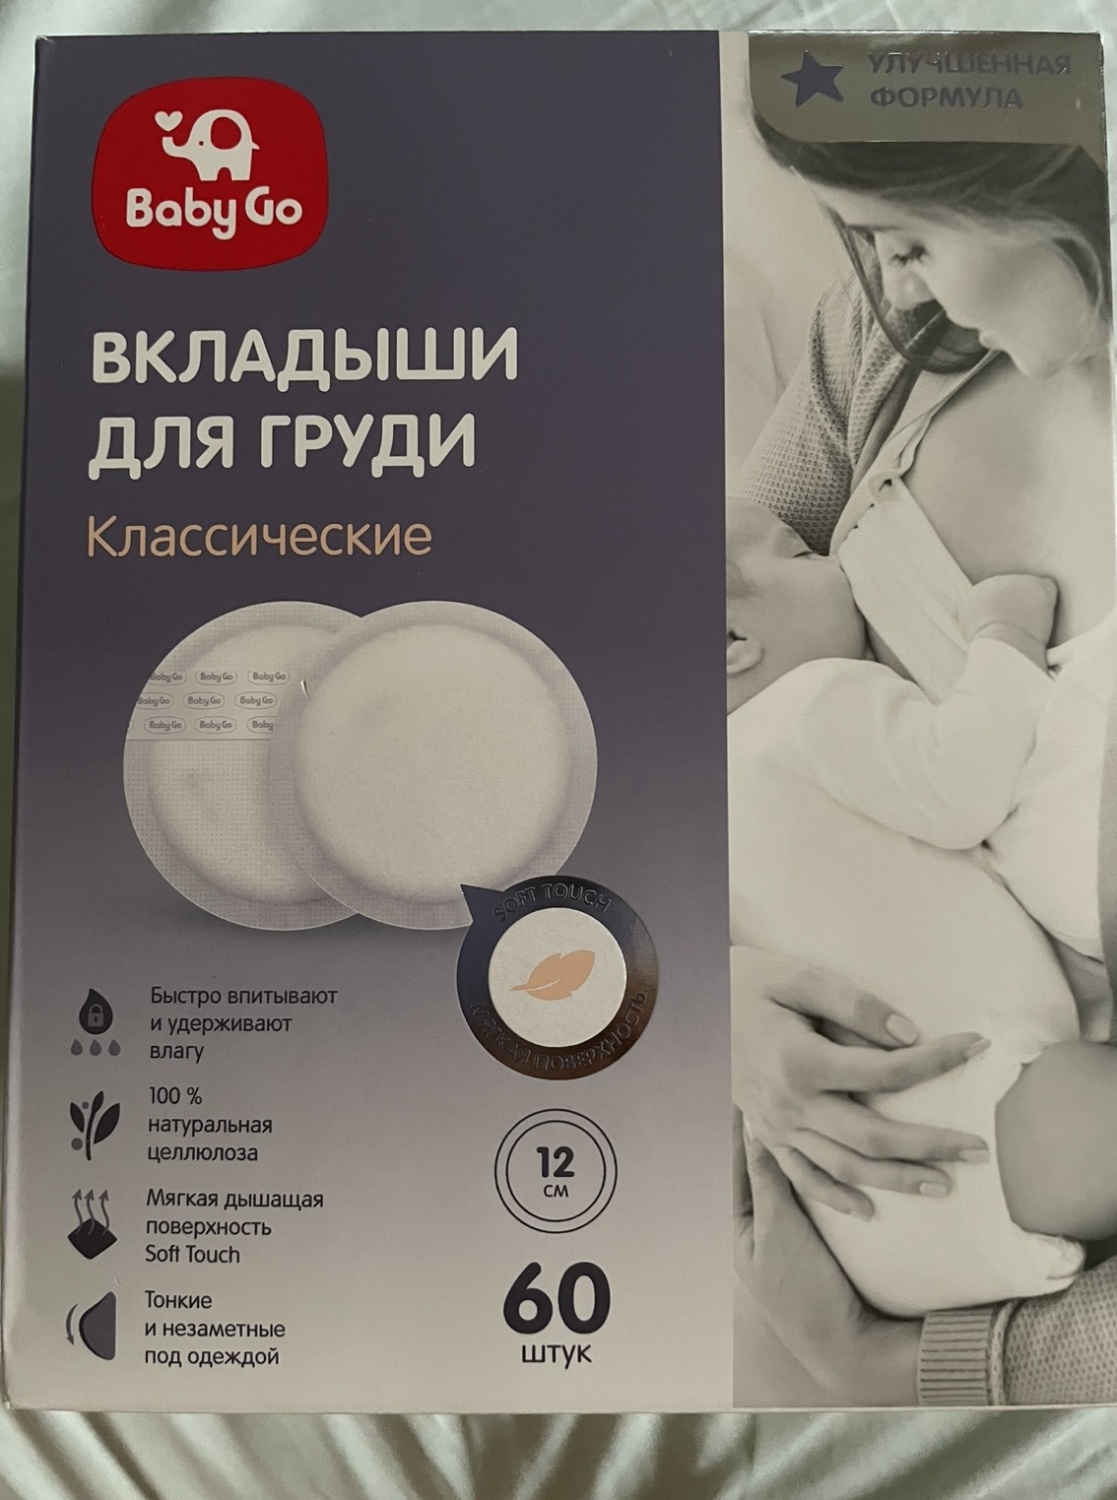 Лазерная эпиляция груди в Москве в Versua Clinic, цены, отзывы на лазерную эпиляцию груди и ареол